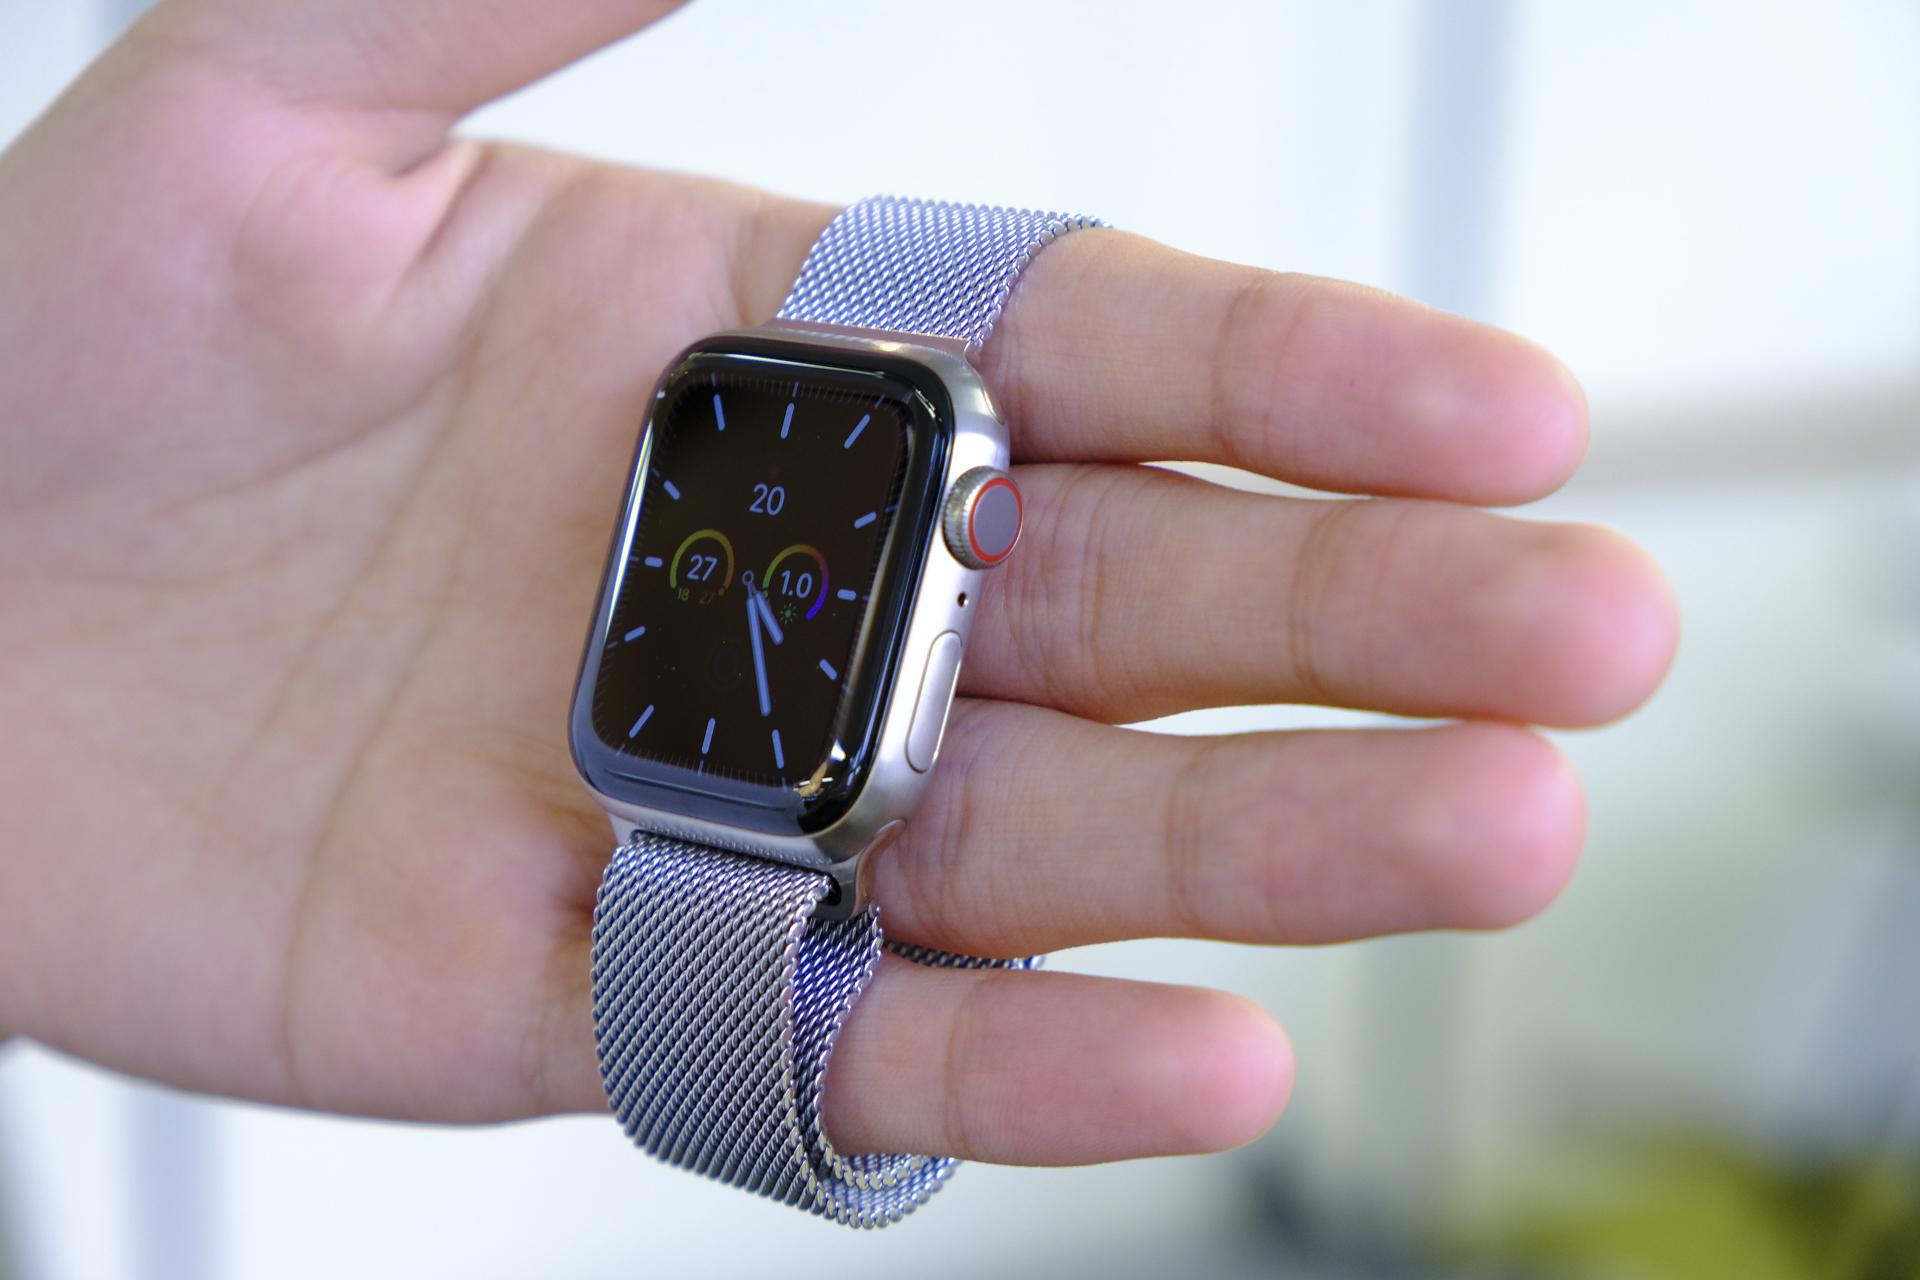 Apple Watch Series 5はチタンになったことで時計に近づいた。けれど 